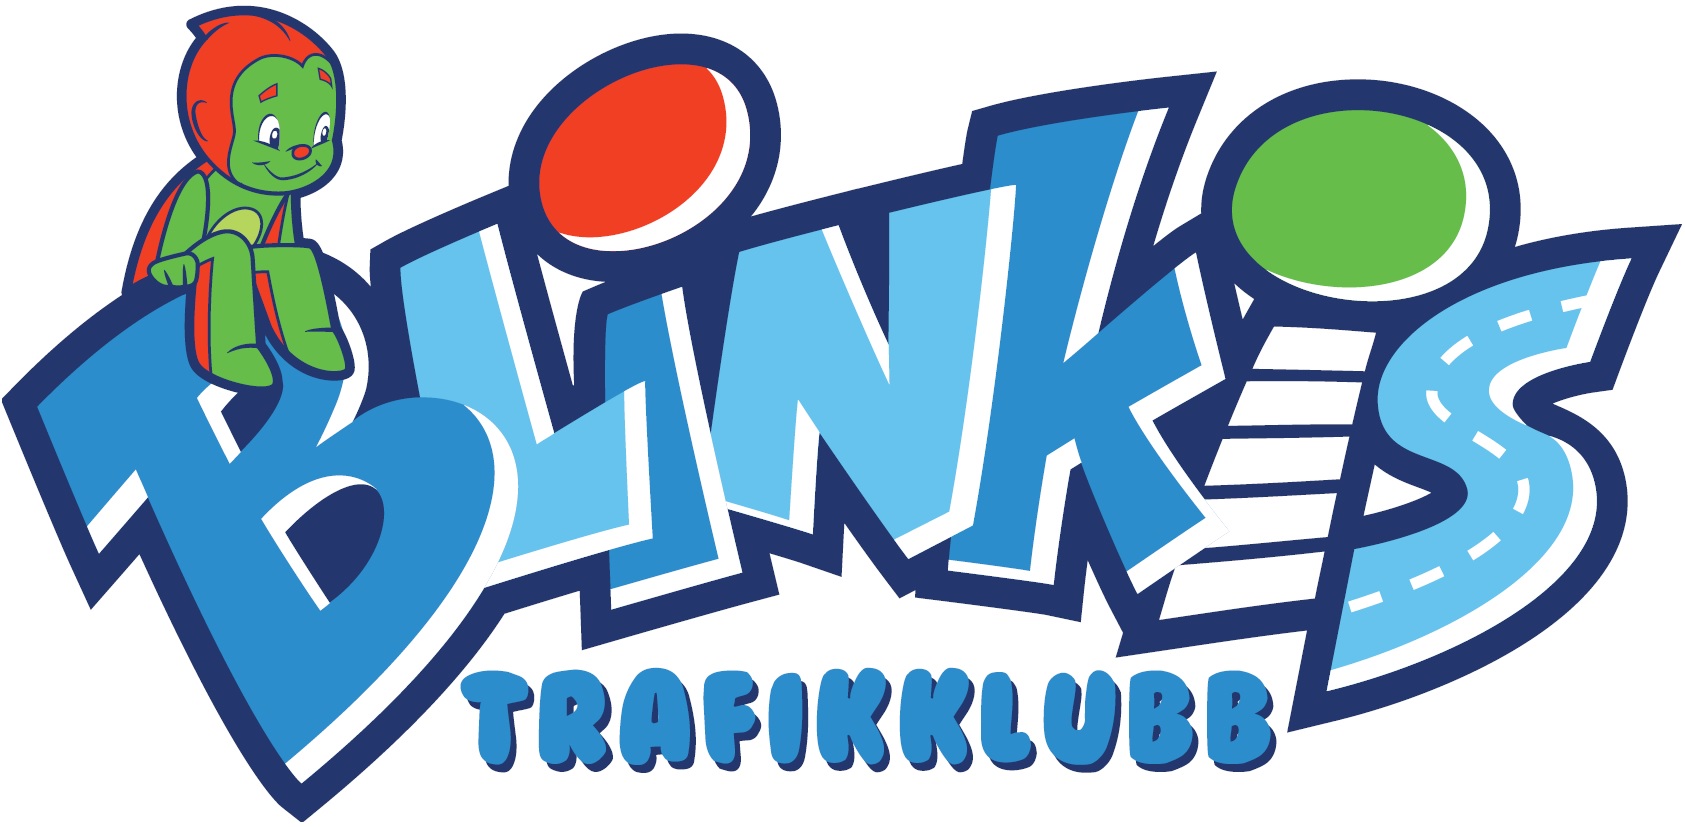 Blinkis Trafikklubb